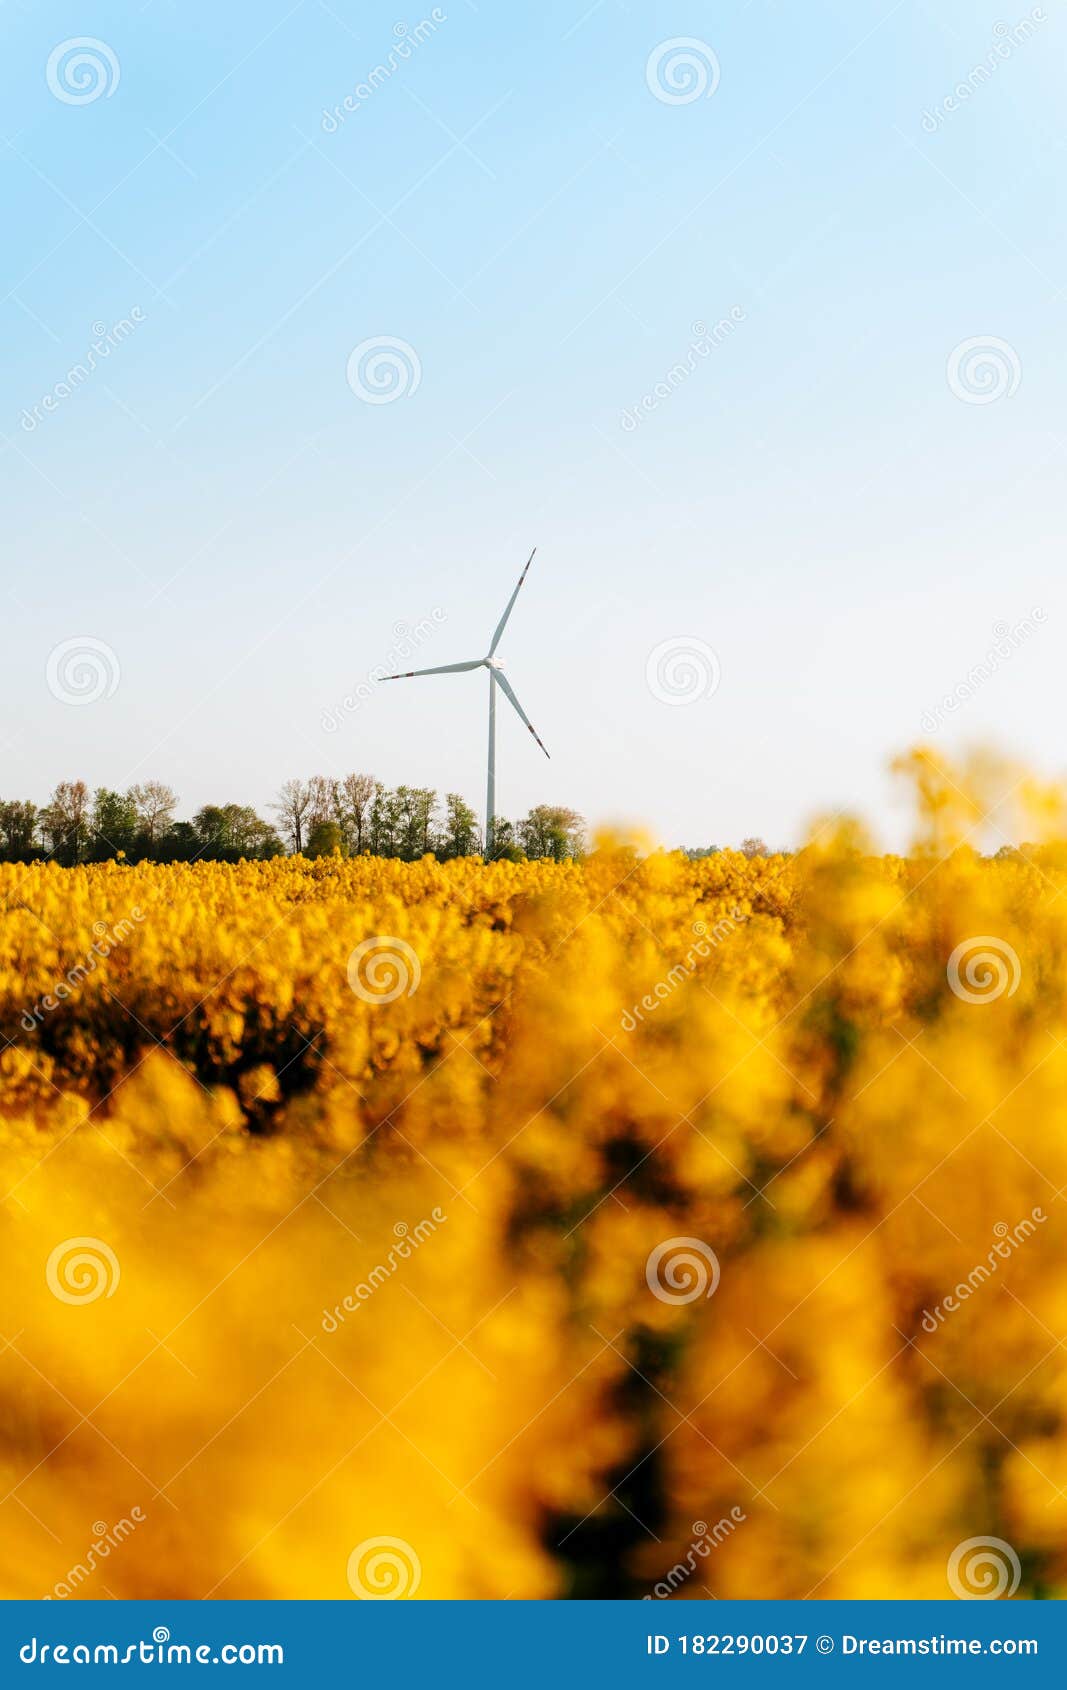 ecological windmill, in the rape field